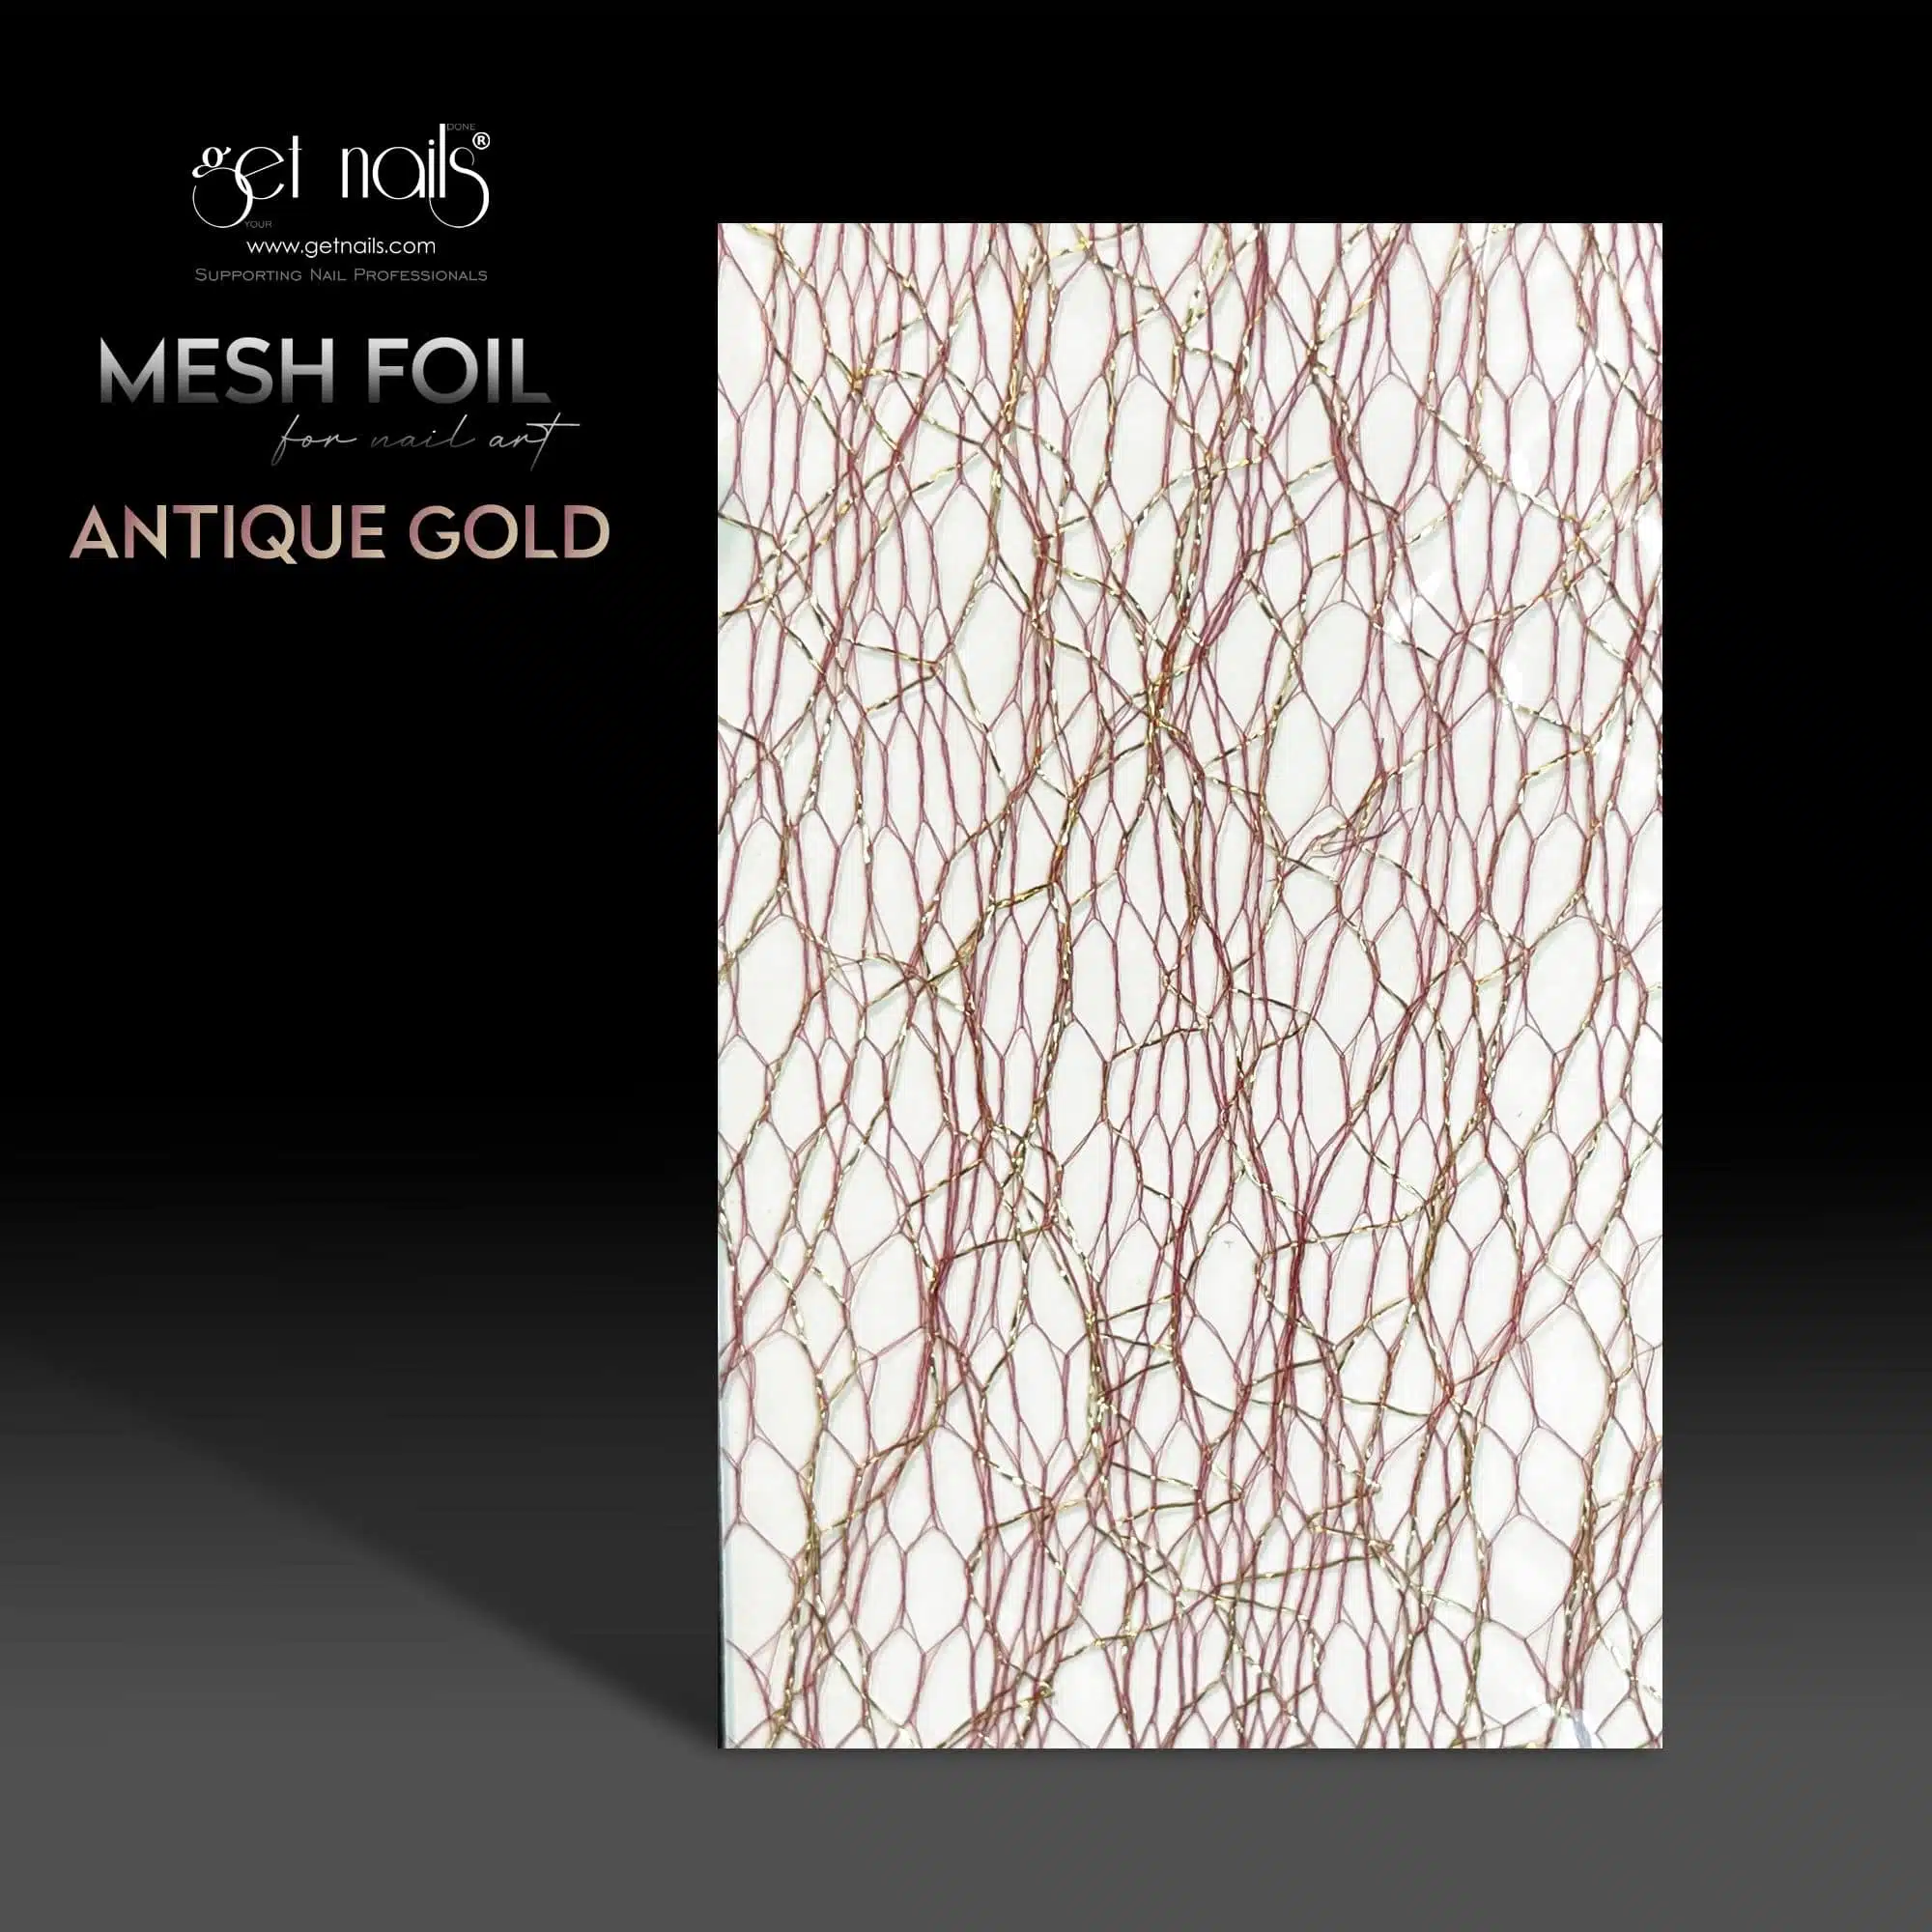 Get Nails Austria - Mesh Foil Antique Gold